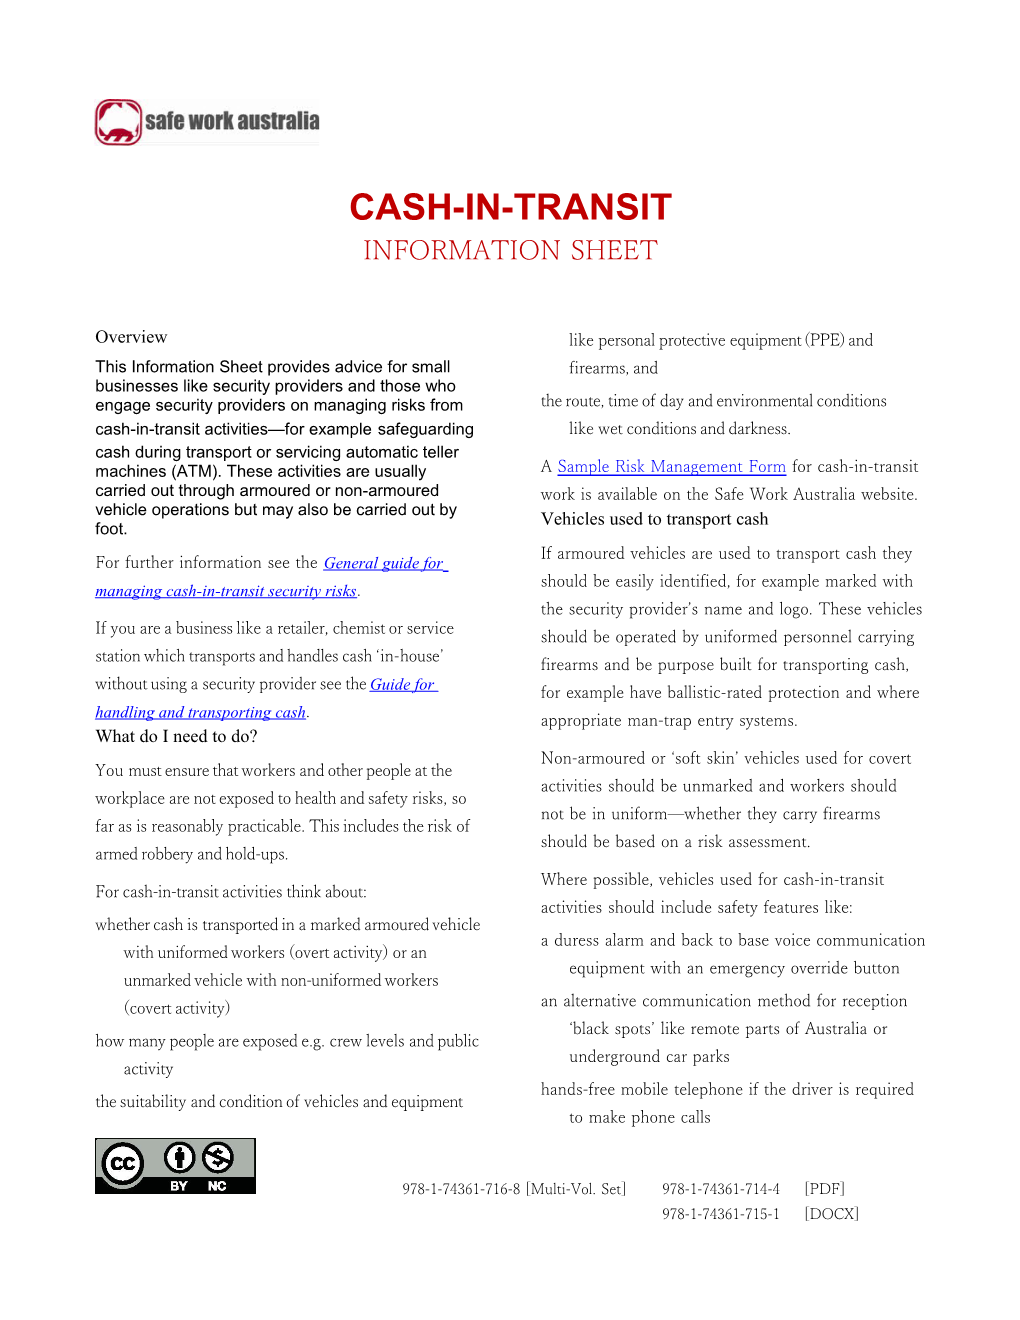 4. Cash-In-Transit Information Sheet